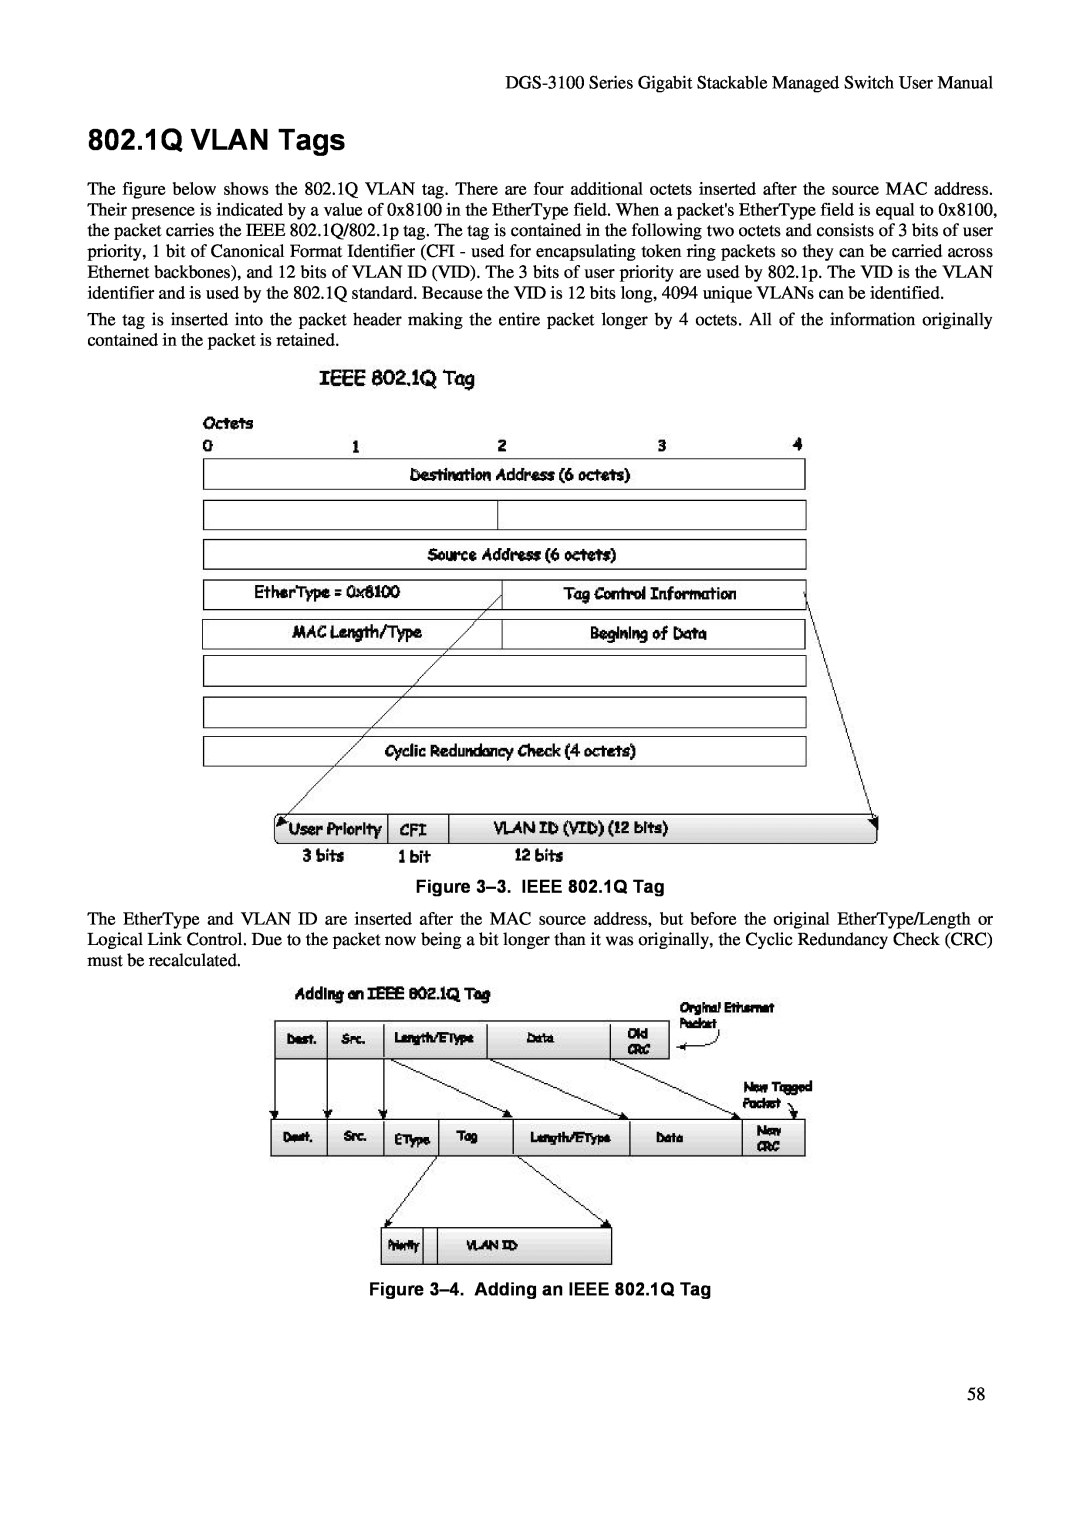 D-Link DGS-3100 user manual 802.1Q VLAN Tags, 3. IEEE 802.1Q Tag, 4. Adding an IEEE 802.1Q Tag 